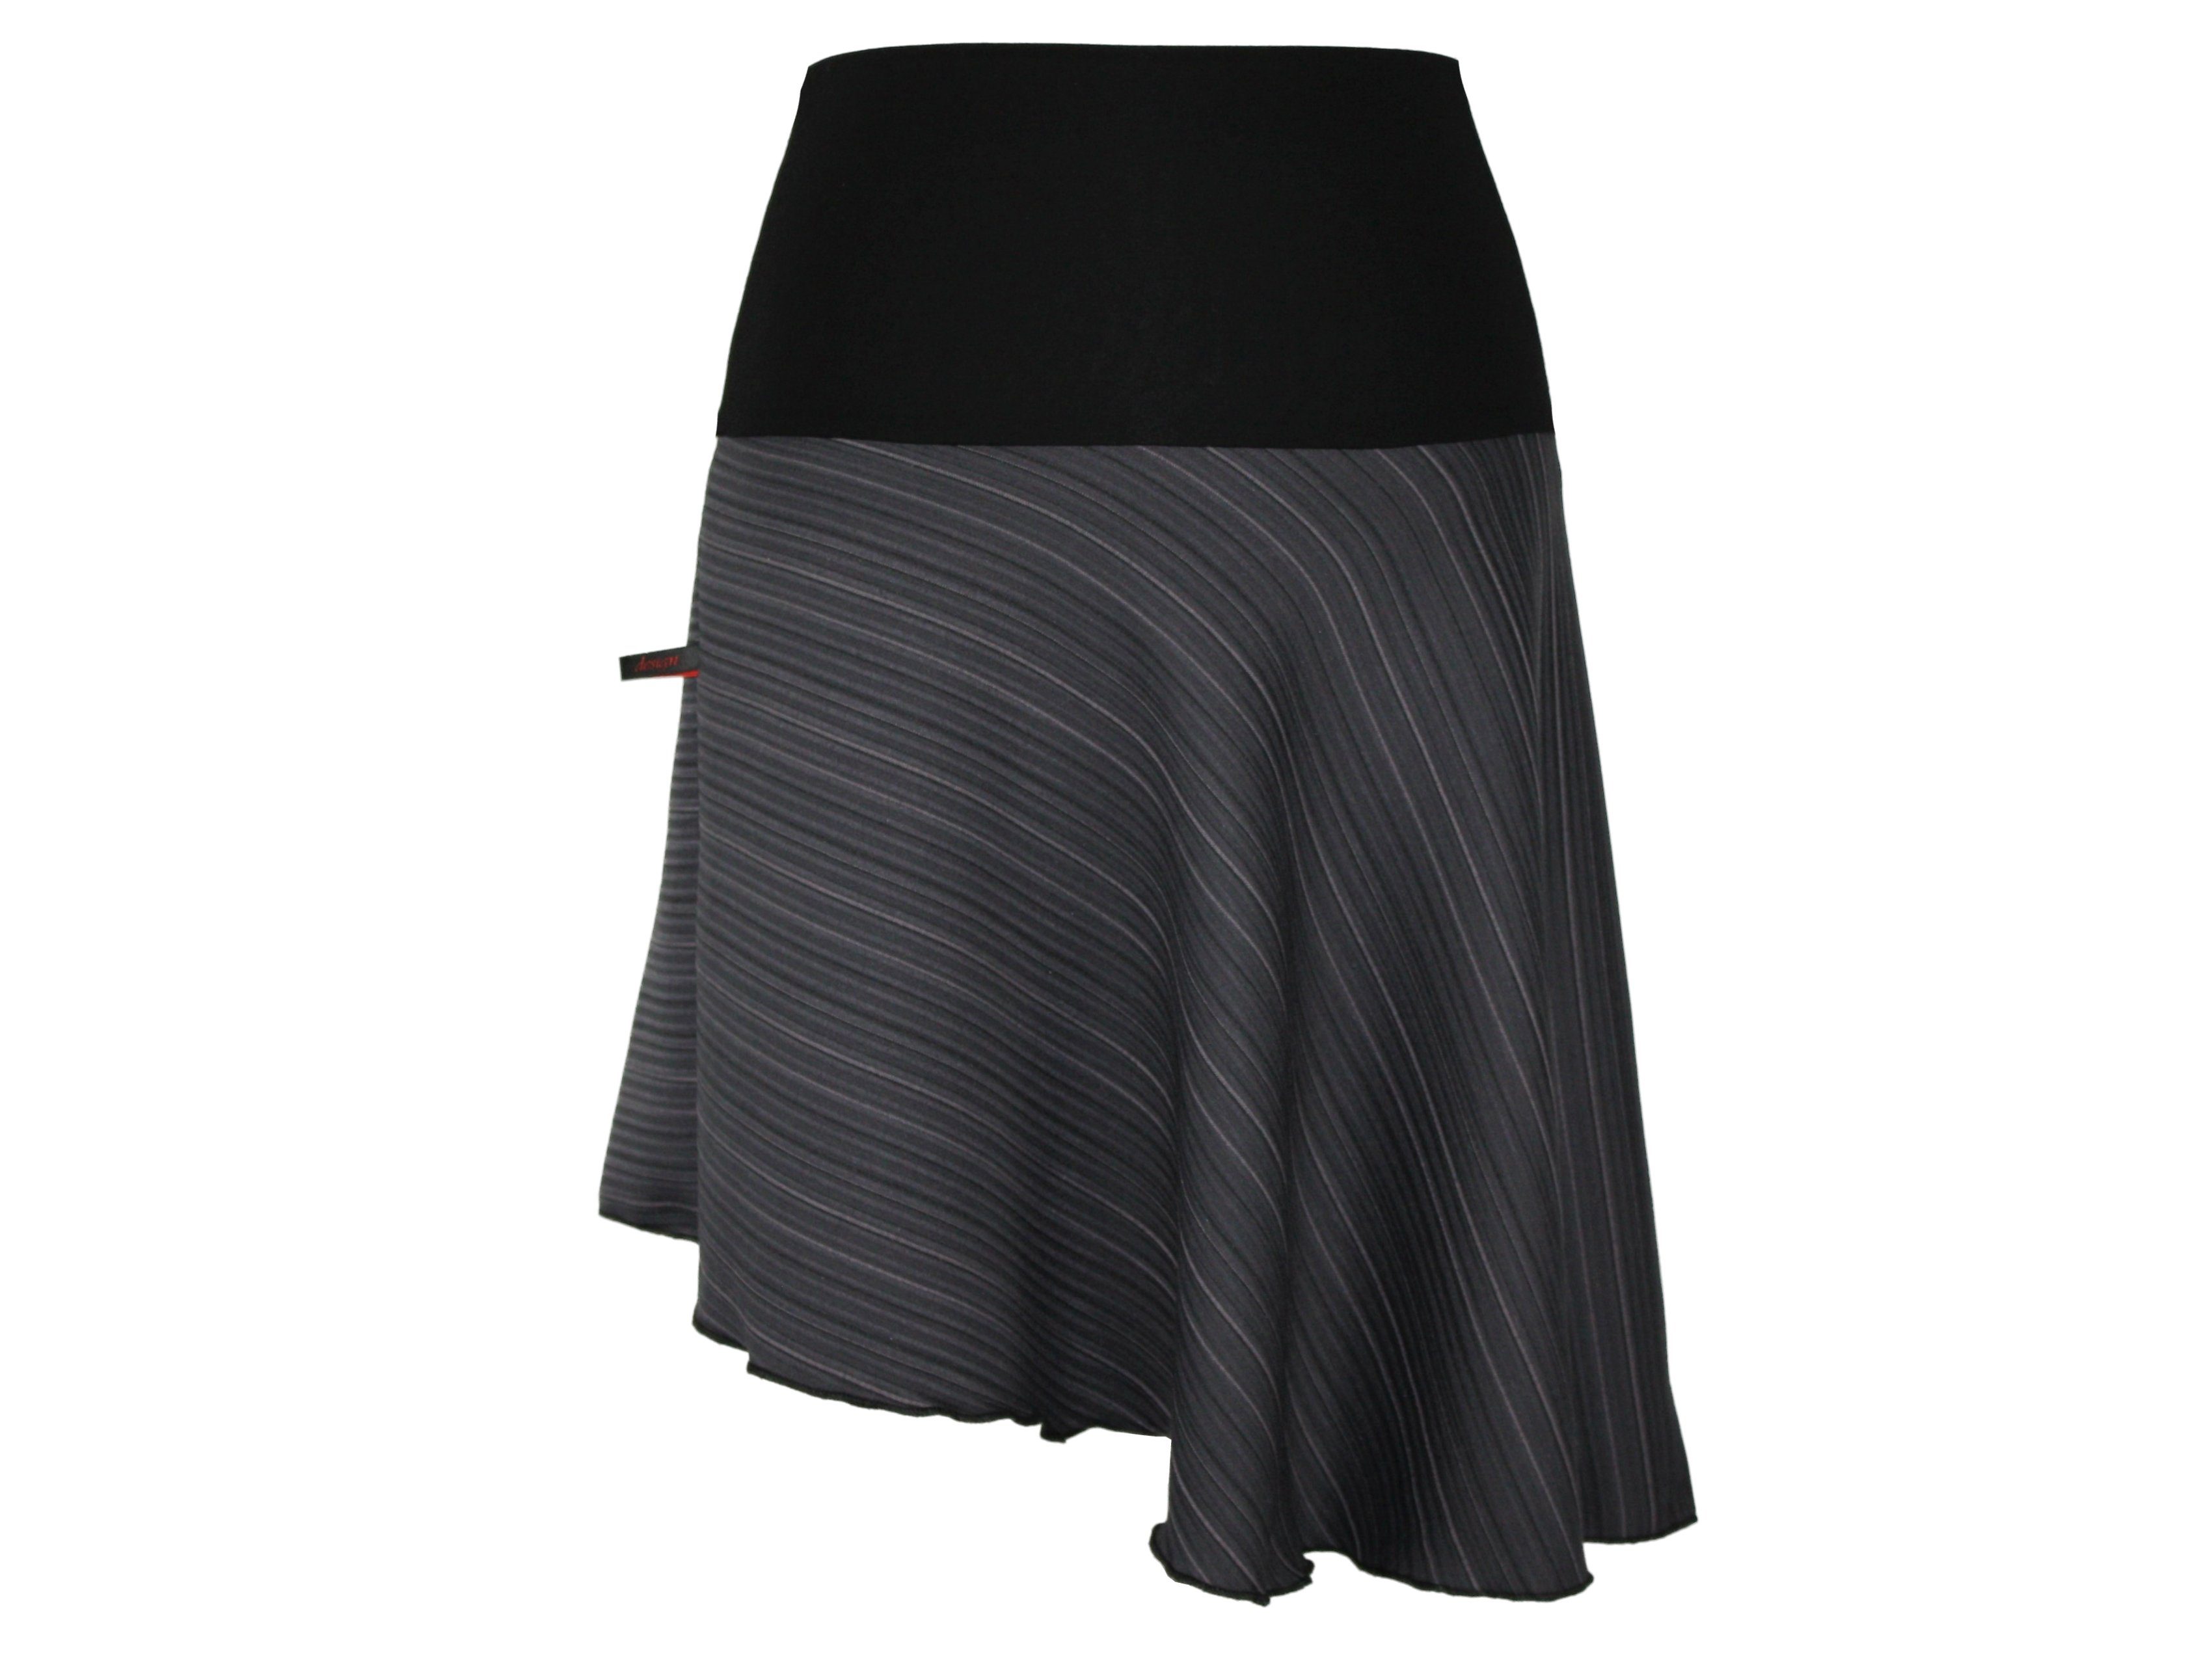 dunkle design Minirock Asymmetrisch Grau Schwarz Streifen Jerseybund